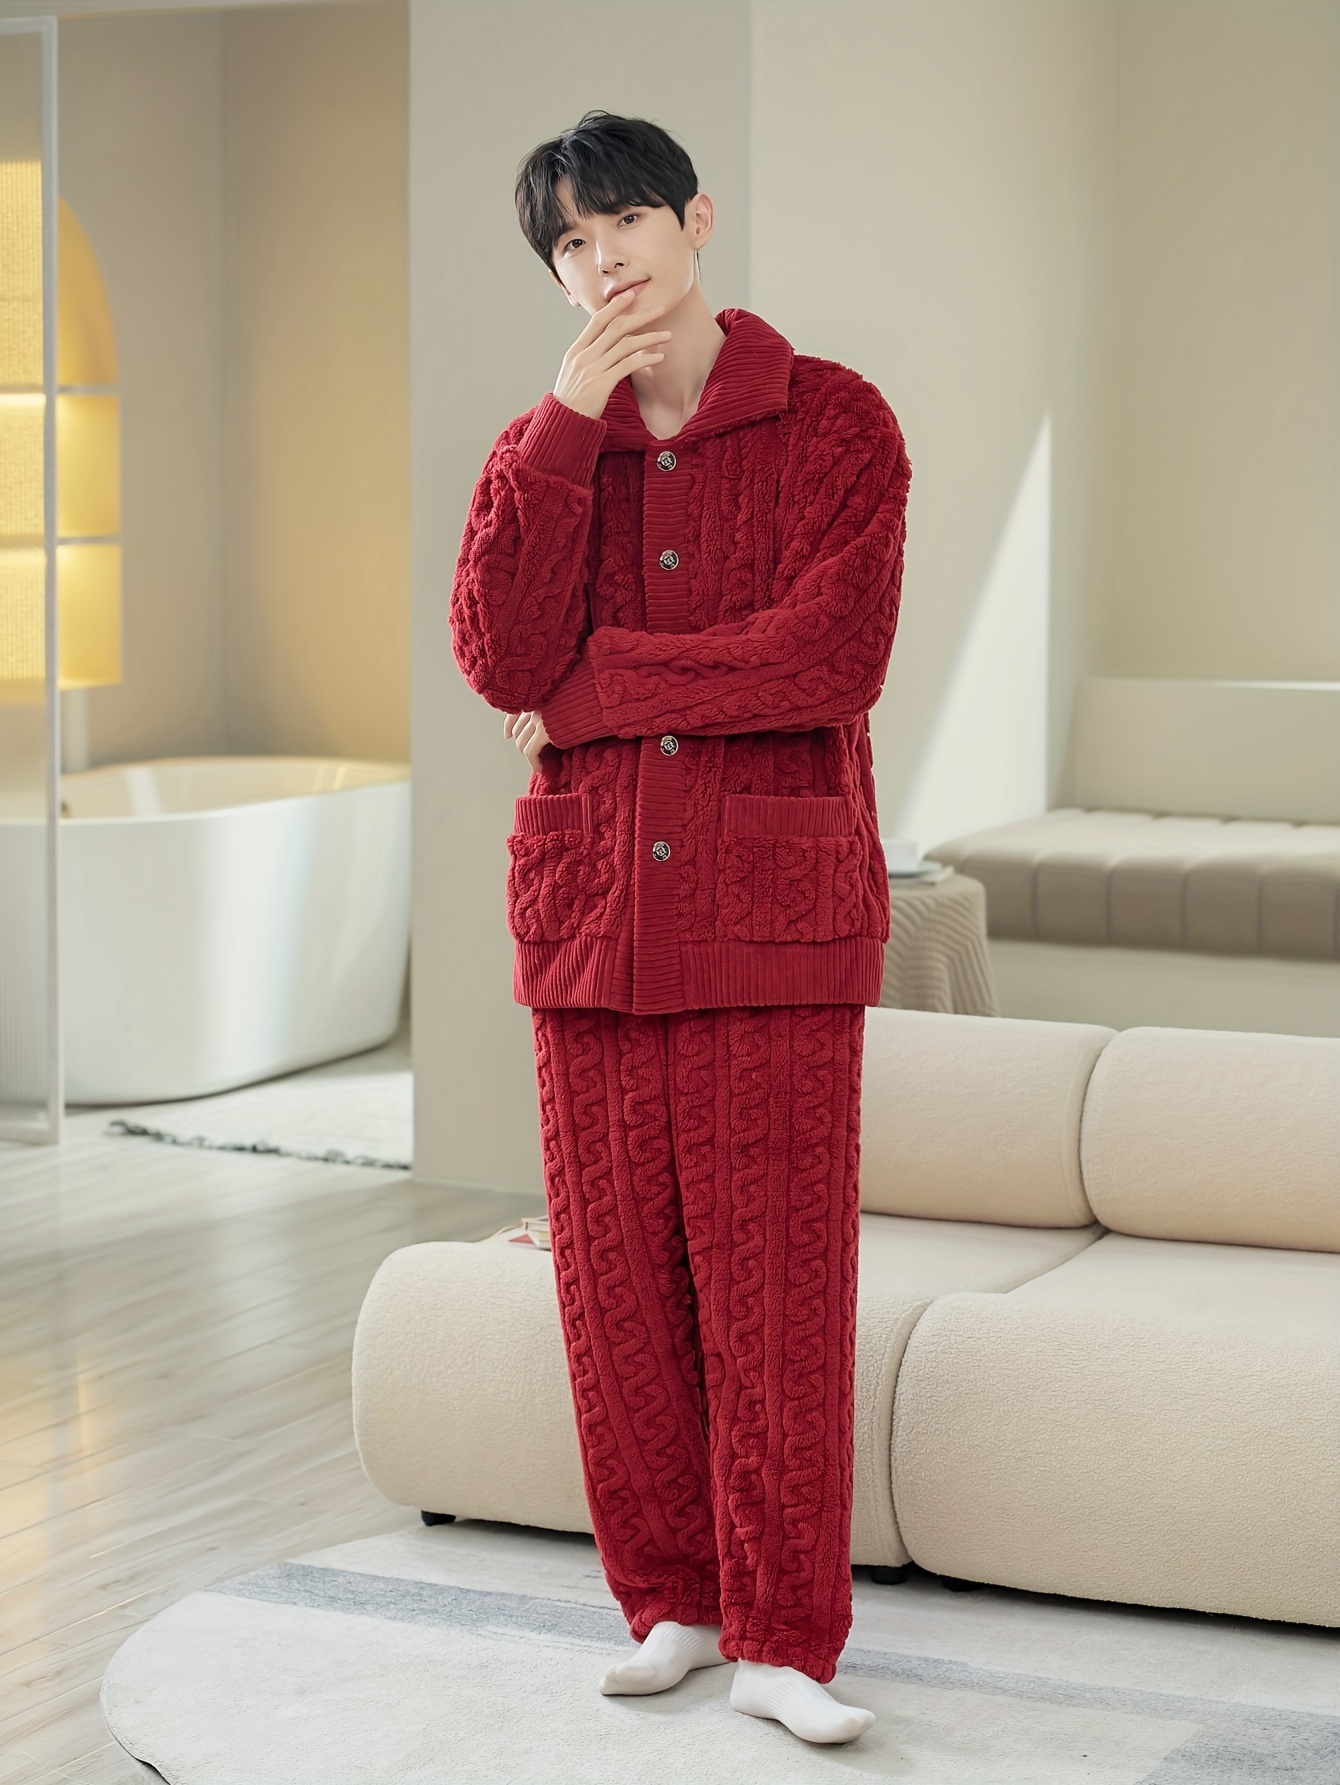 Pijama para hombre con camiseta de manga corta roja y pantalón a cuadros  rojo y negro